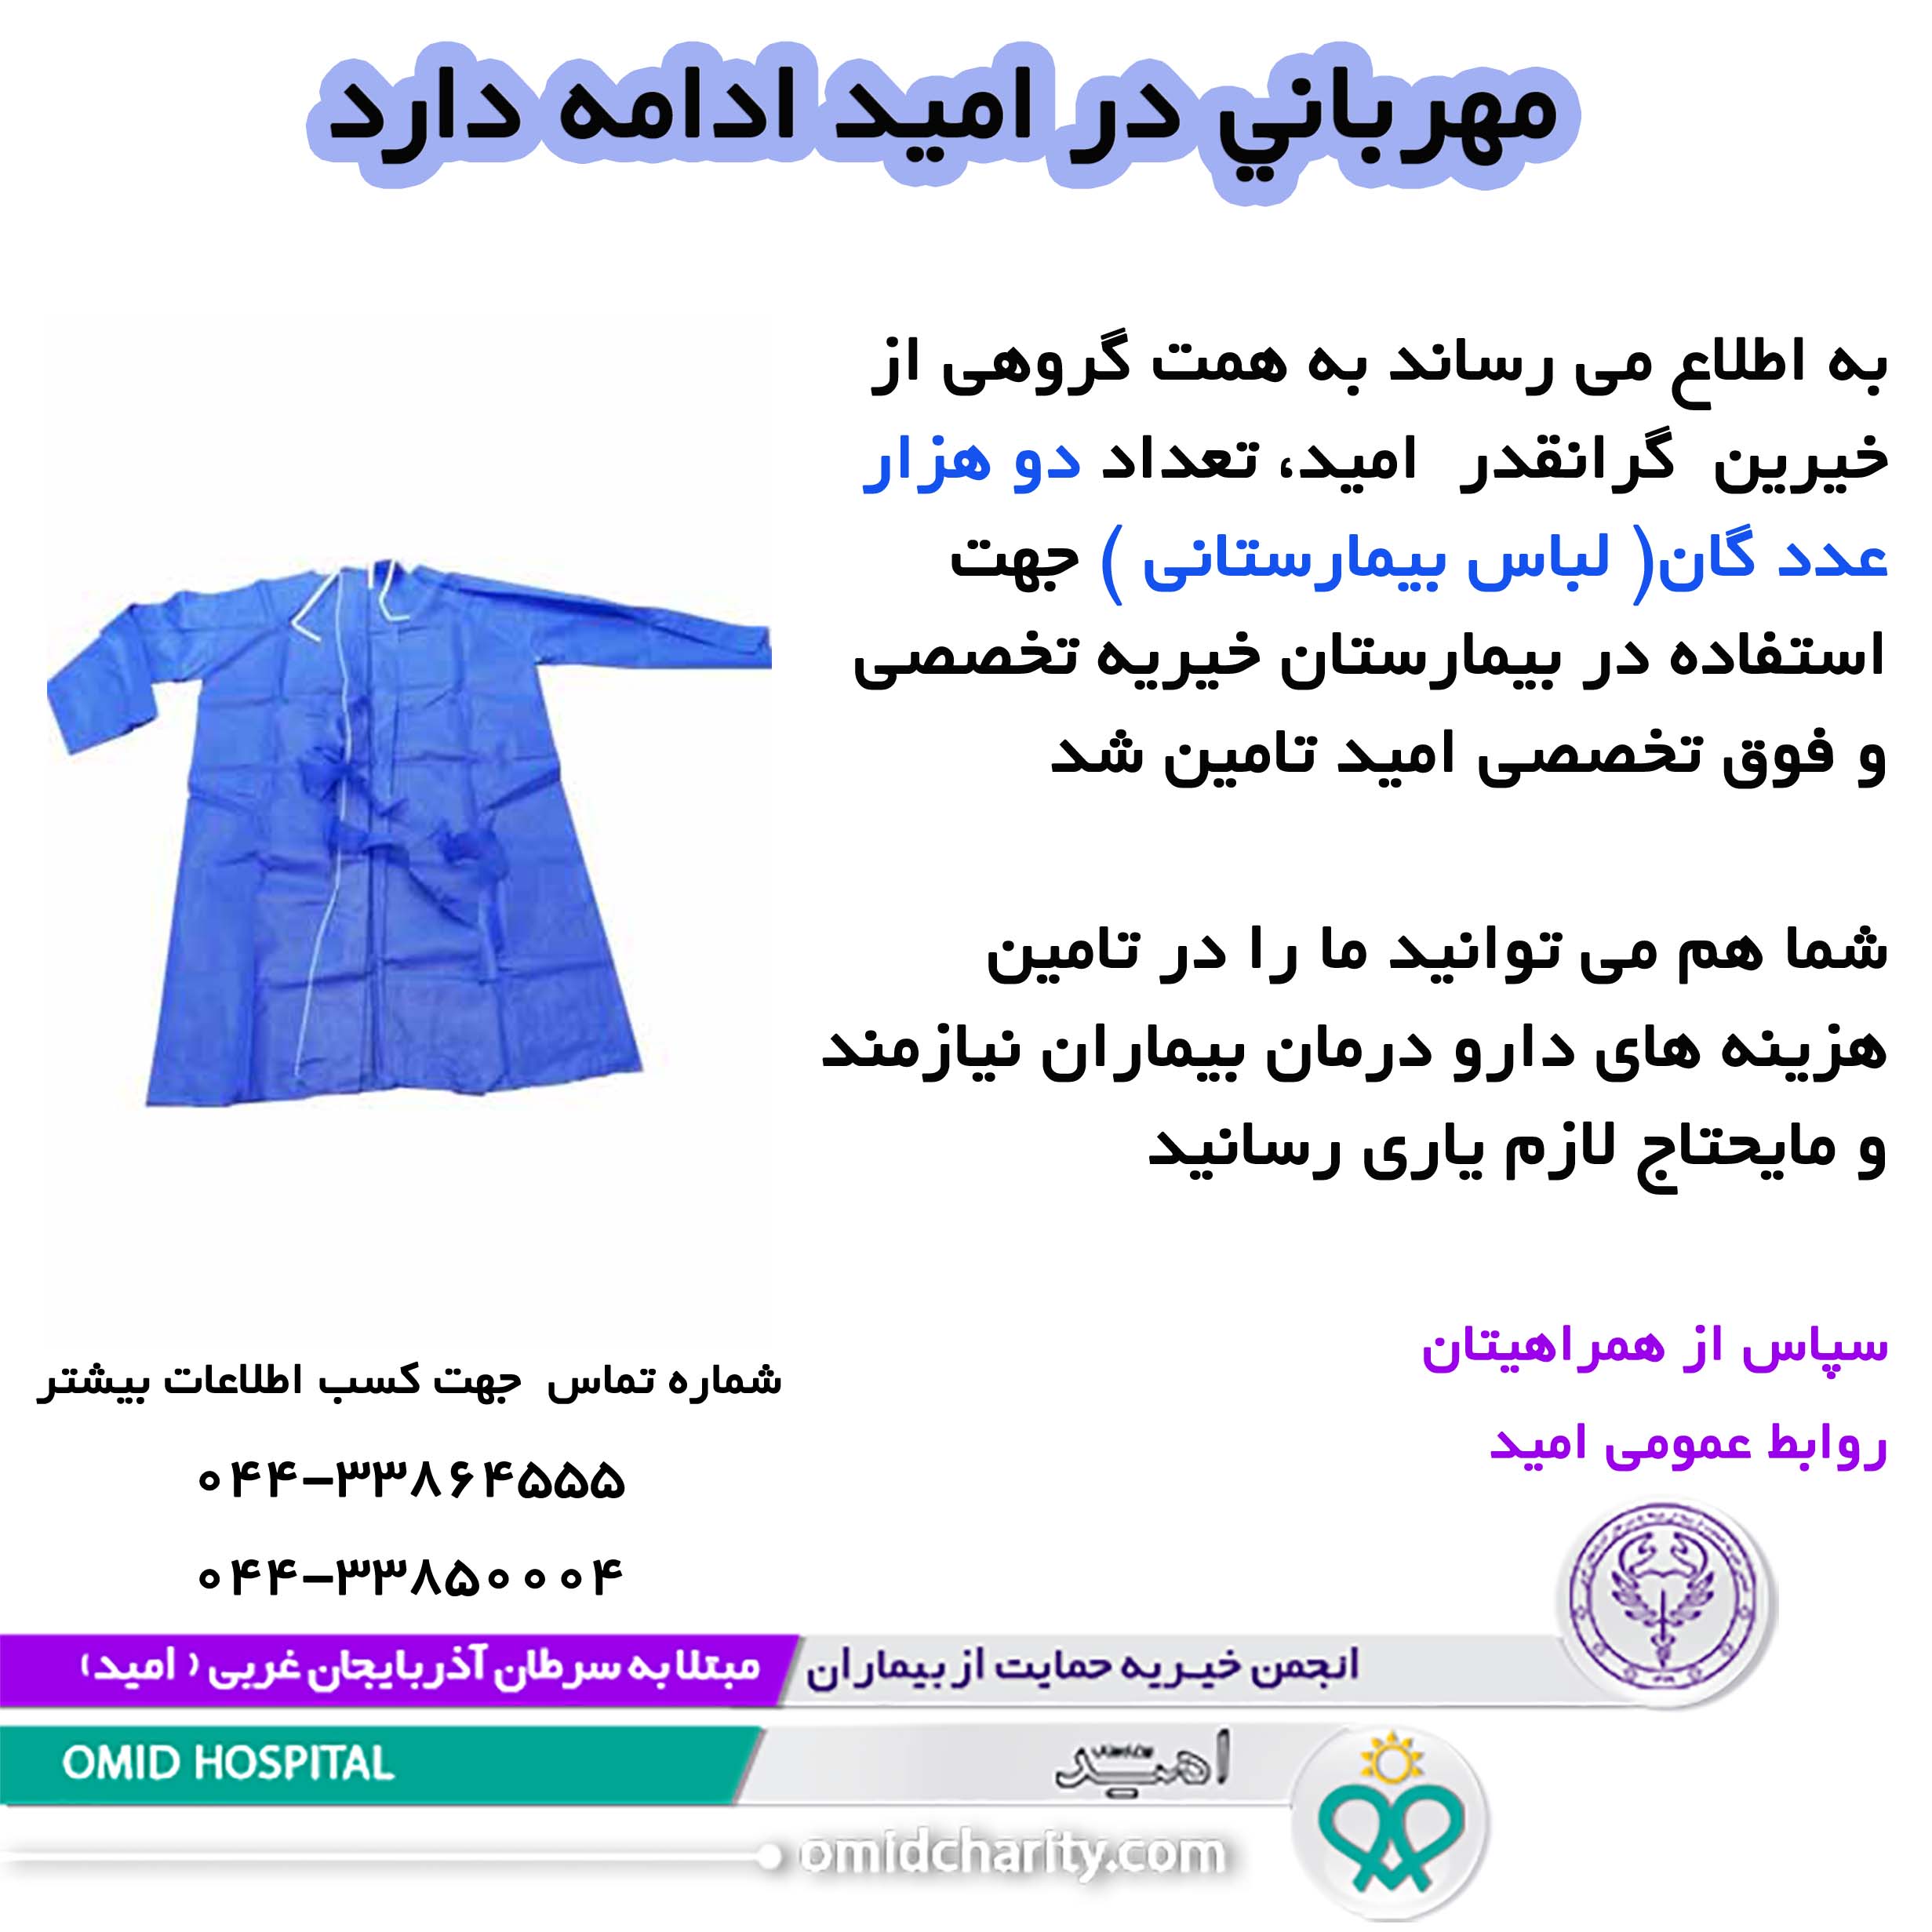 تامين 2 هزار عدد گان ( لباس بيمارستاني ) توسط خيرين محترم